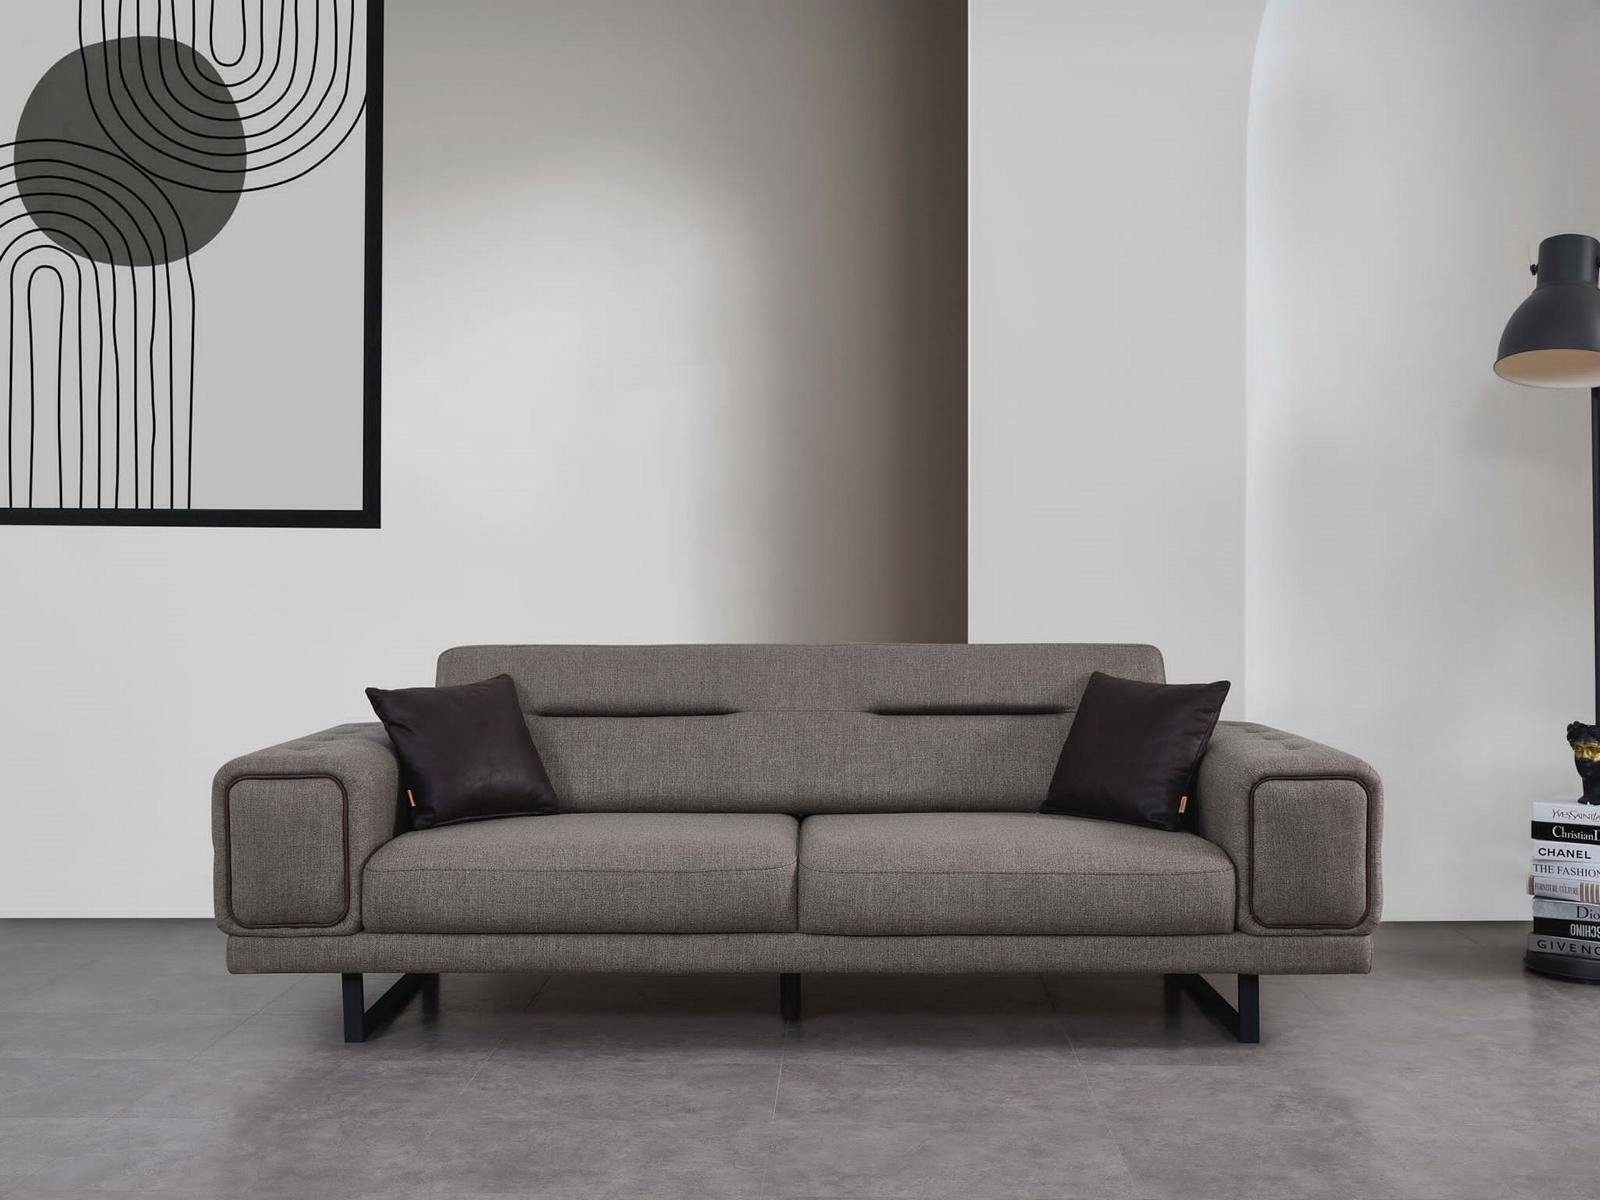 JVmoebel Sofa Luxus Sofas Wohnzimmer Dreisitzer Sofa Modern Einrichtung Neu Design, 1 Teile, Made in Europa